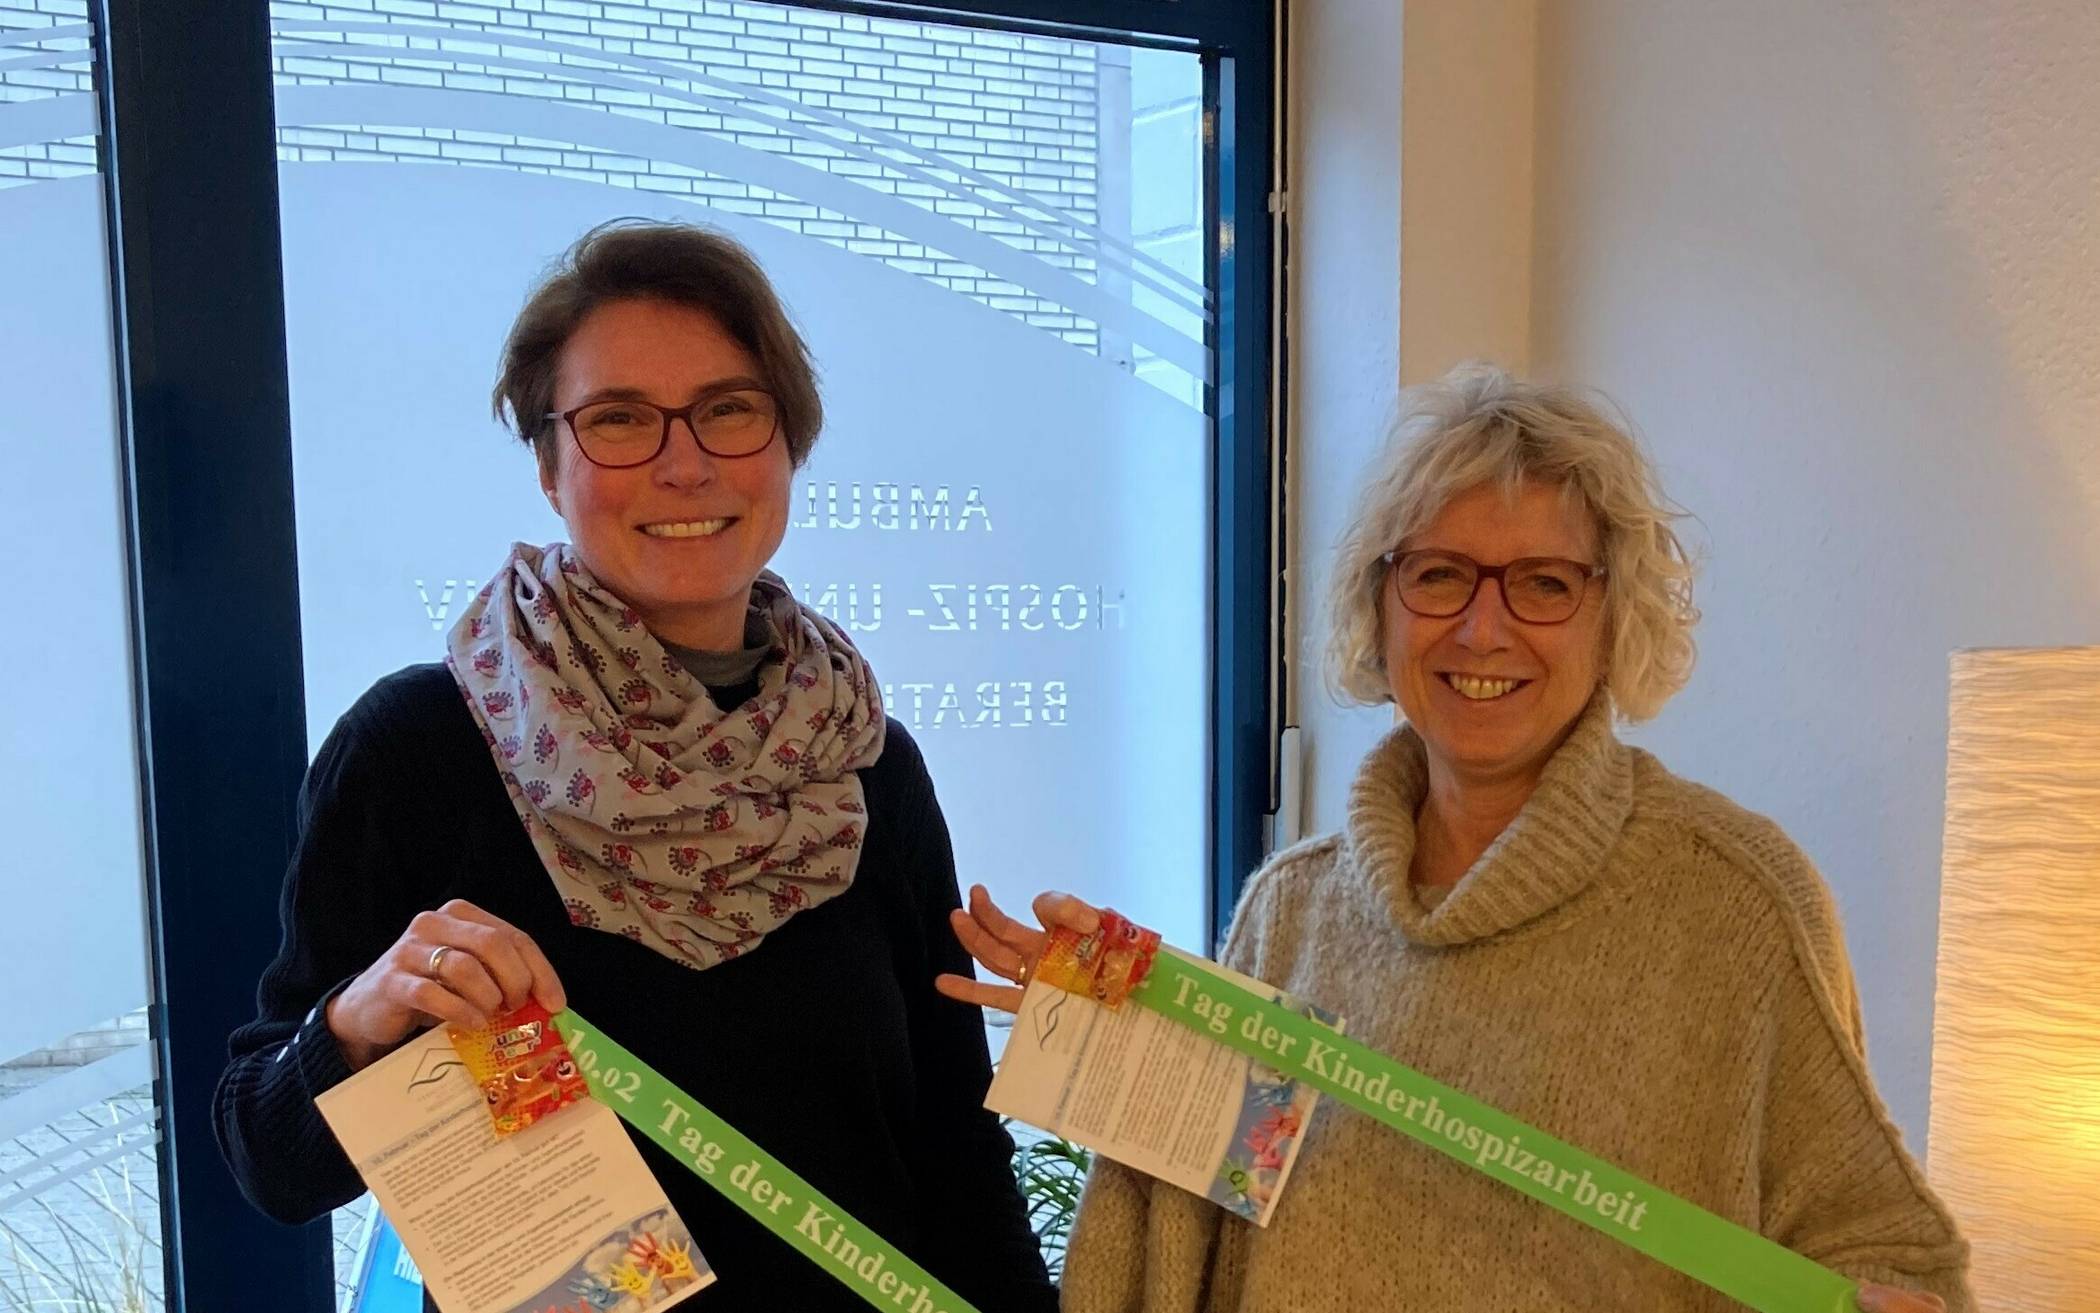  Anke Kaufmann (links) und Kornelia Smailes mit den grünen Bänder und den Flyern, die anlässlich des Tages der Kinderhospizarbeit in Mettmann verteilt werden. 